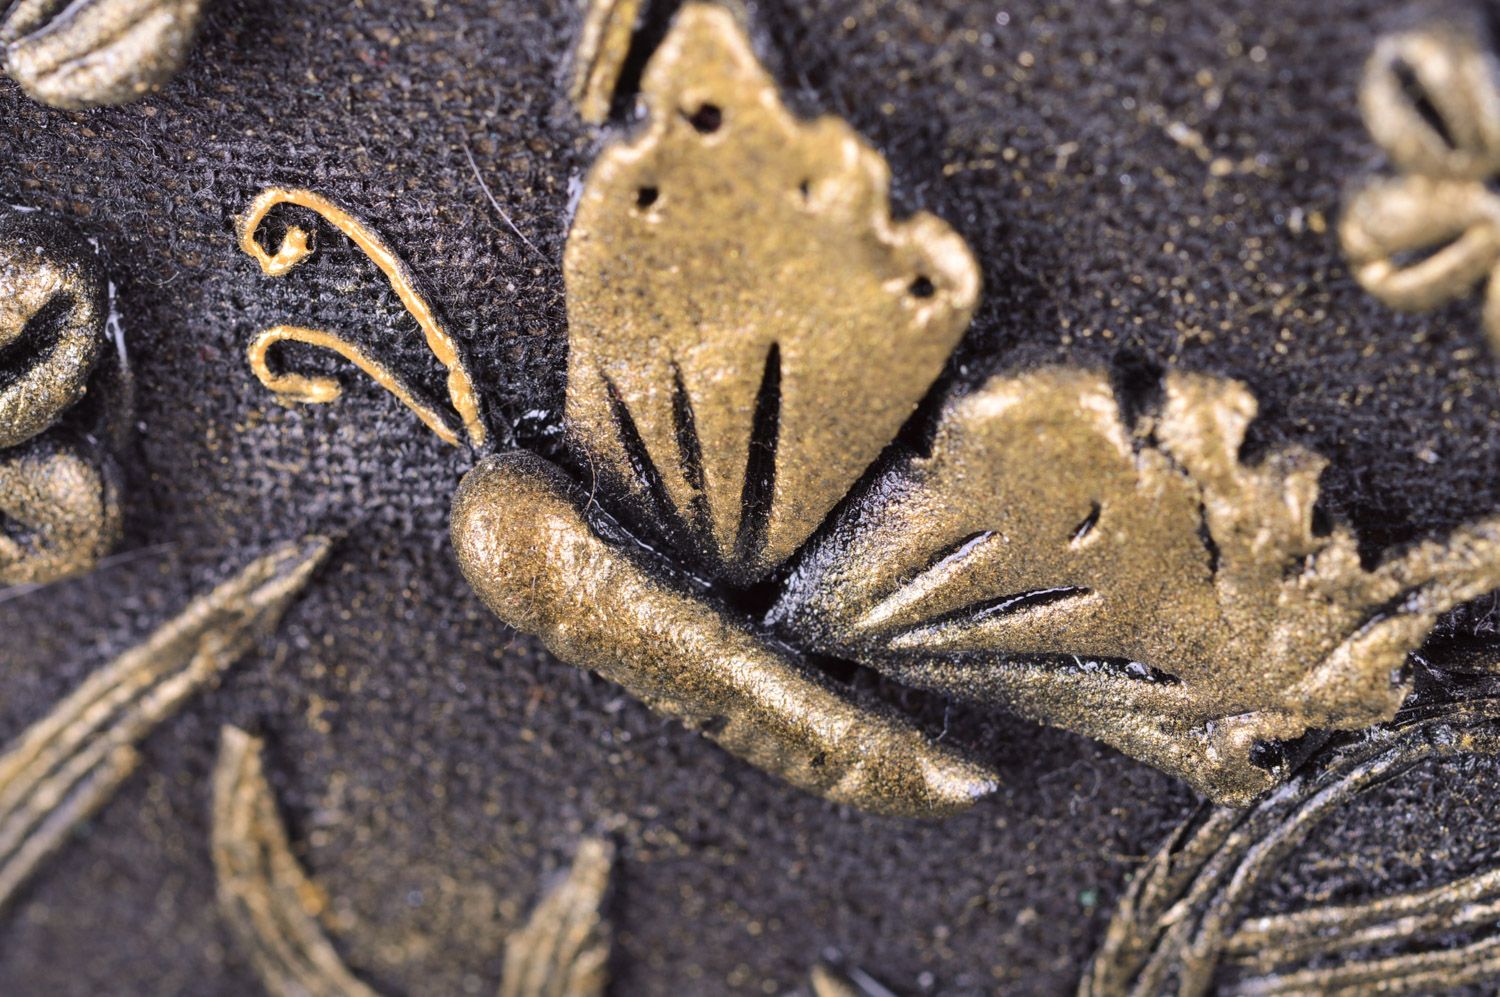 Cuadro de arcilla plimérica enmarcado artesanal y mariposas en tonos oscuros foto 5